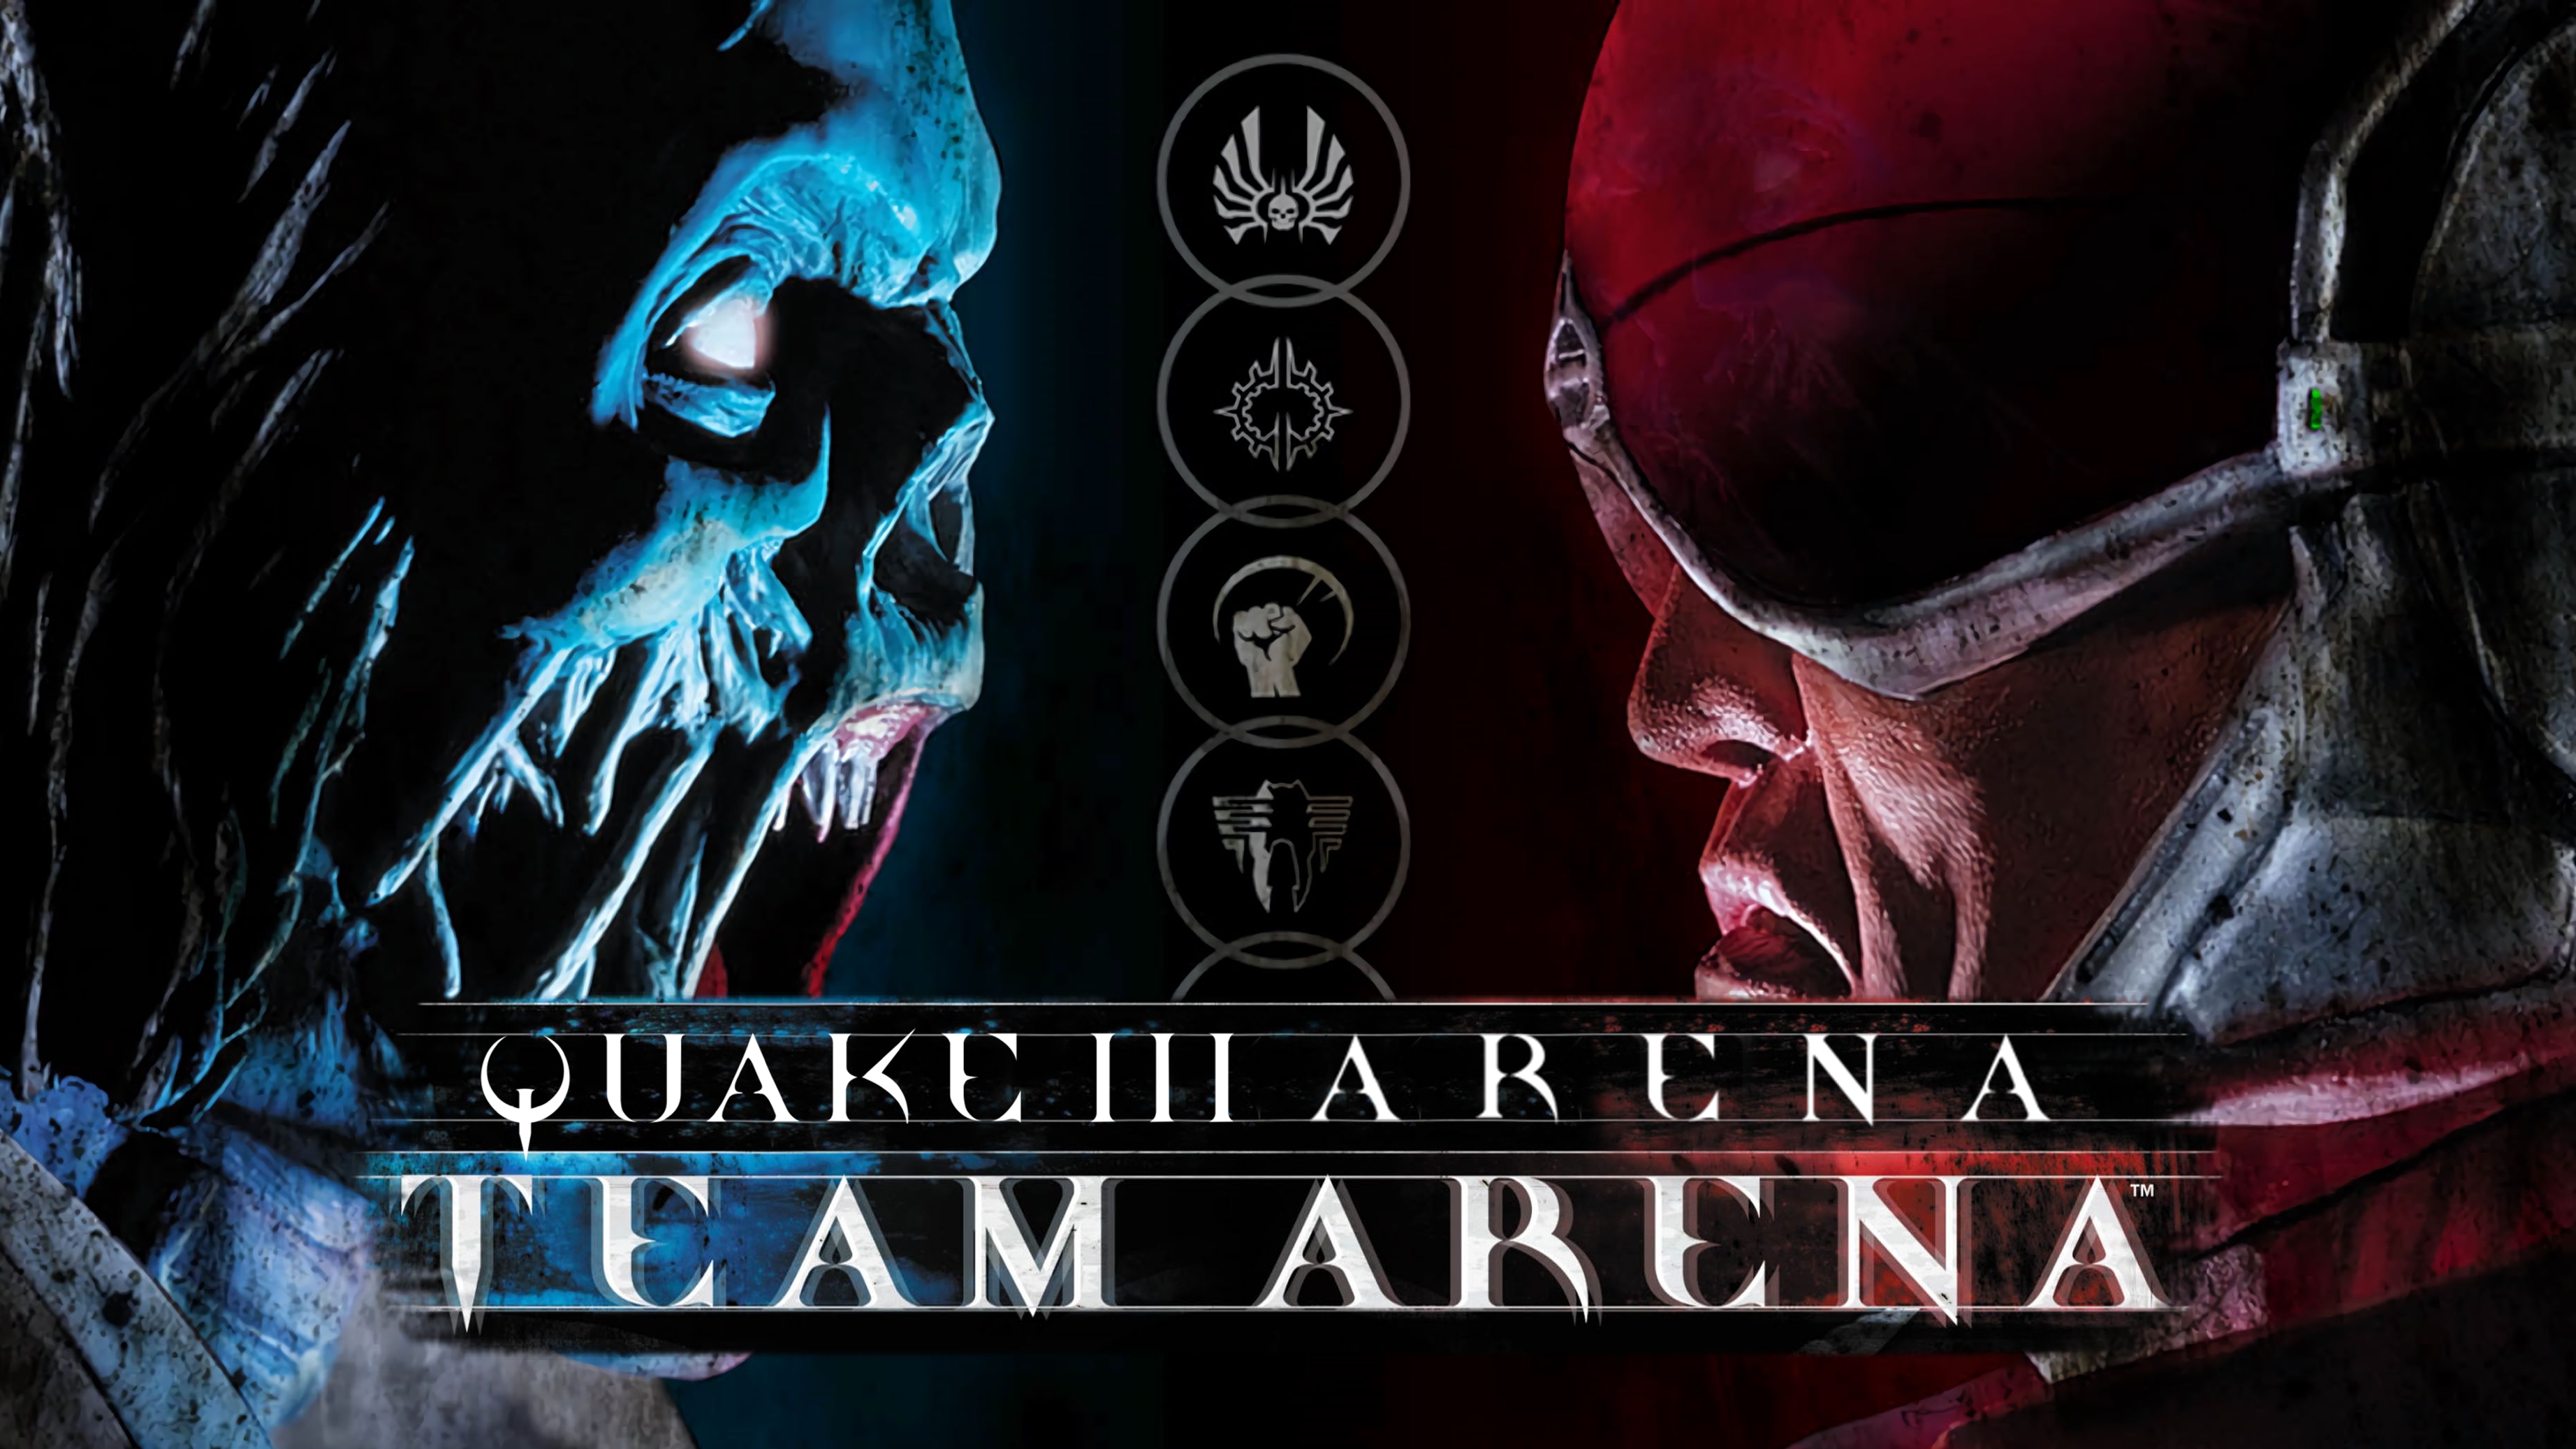 Steam arenas. Quake III Team Arena. Quake 3 Arena обложка. Quake III Arena Minx синяя. Quake 3 Arena Art.